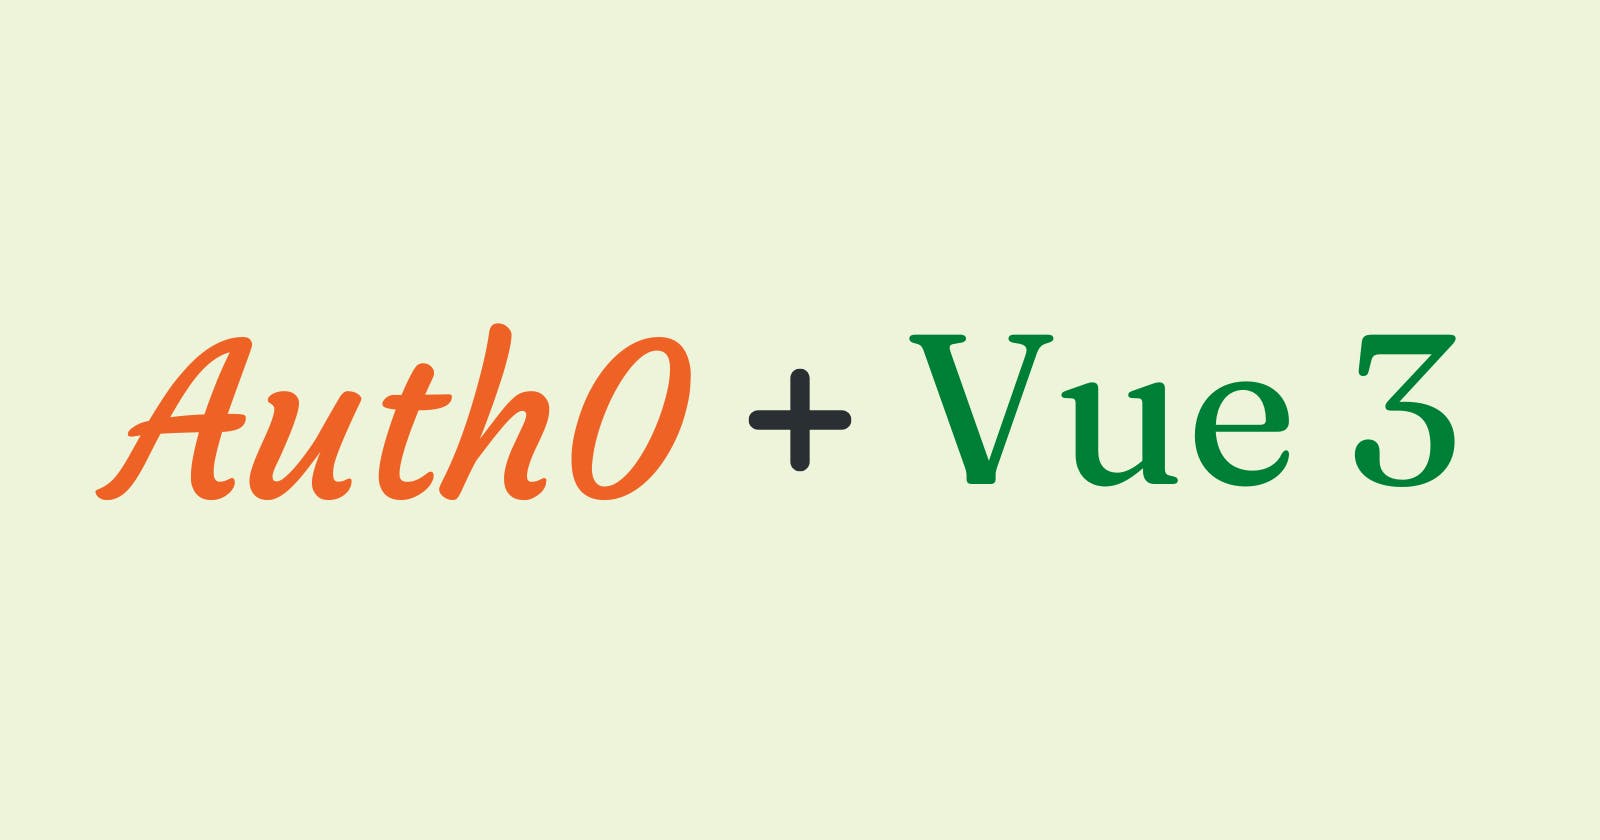 Auth0 + Vue 3 - Using the Auth0 Vue SDK